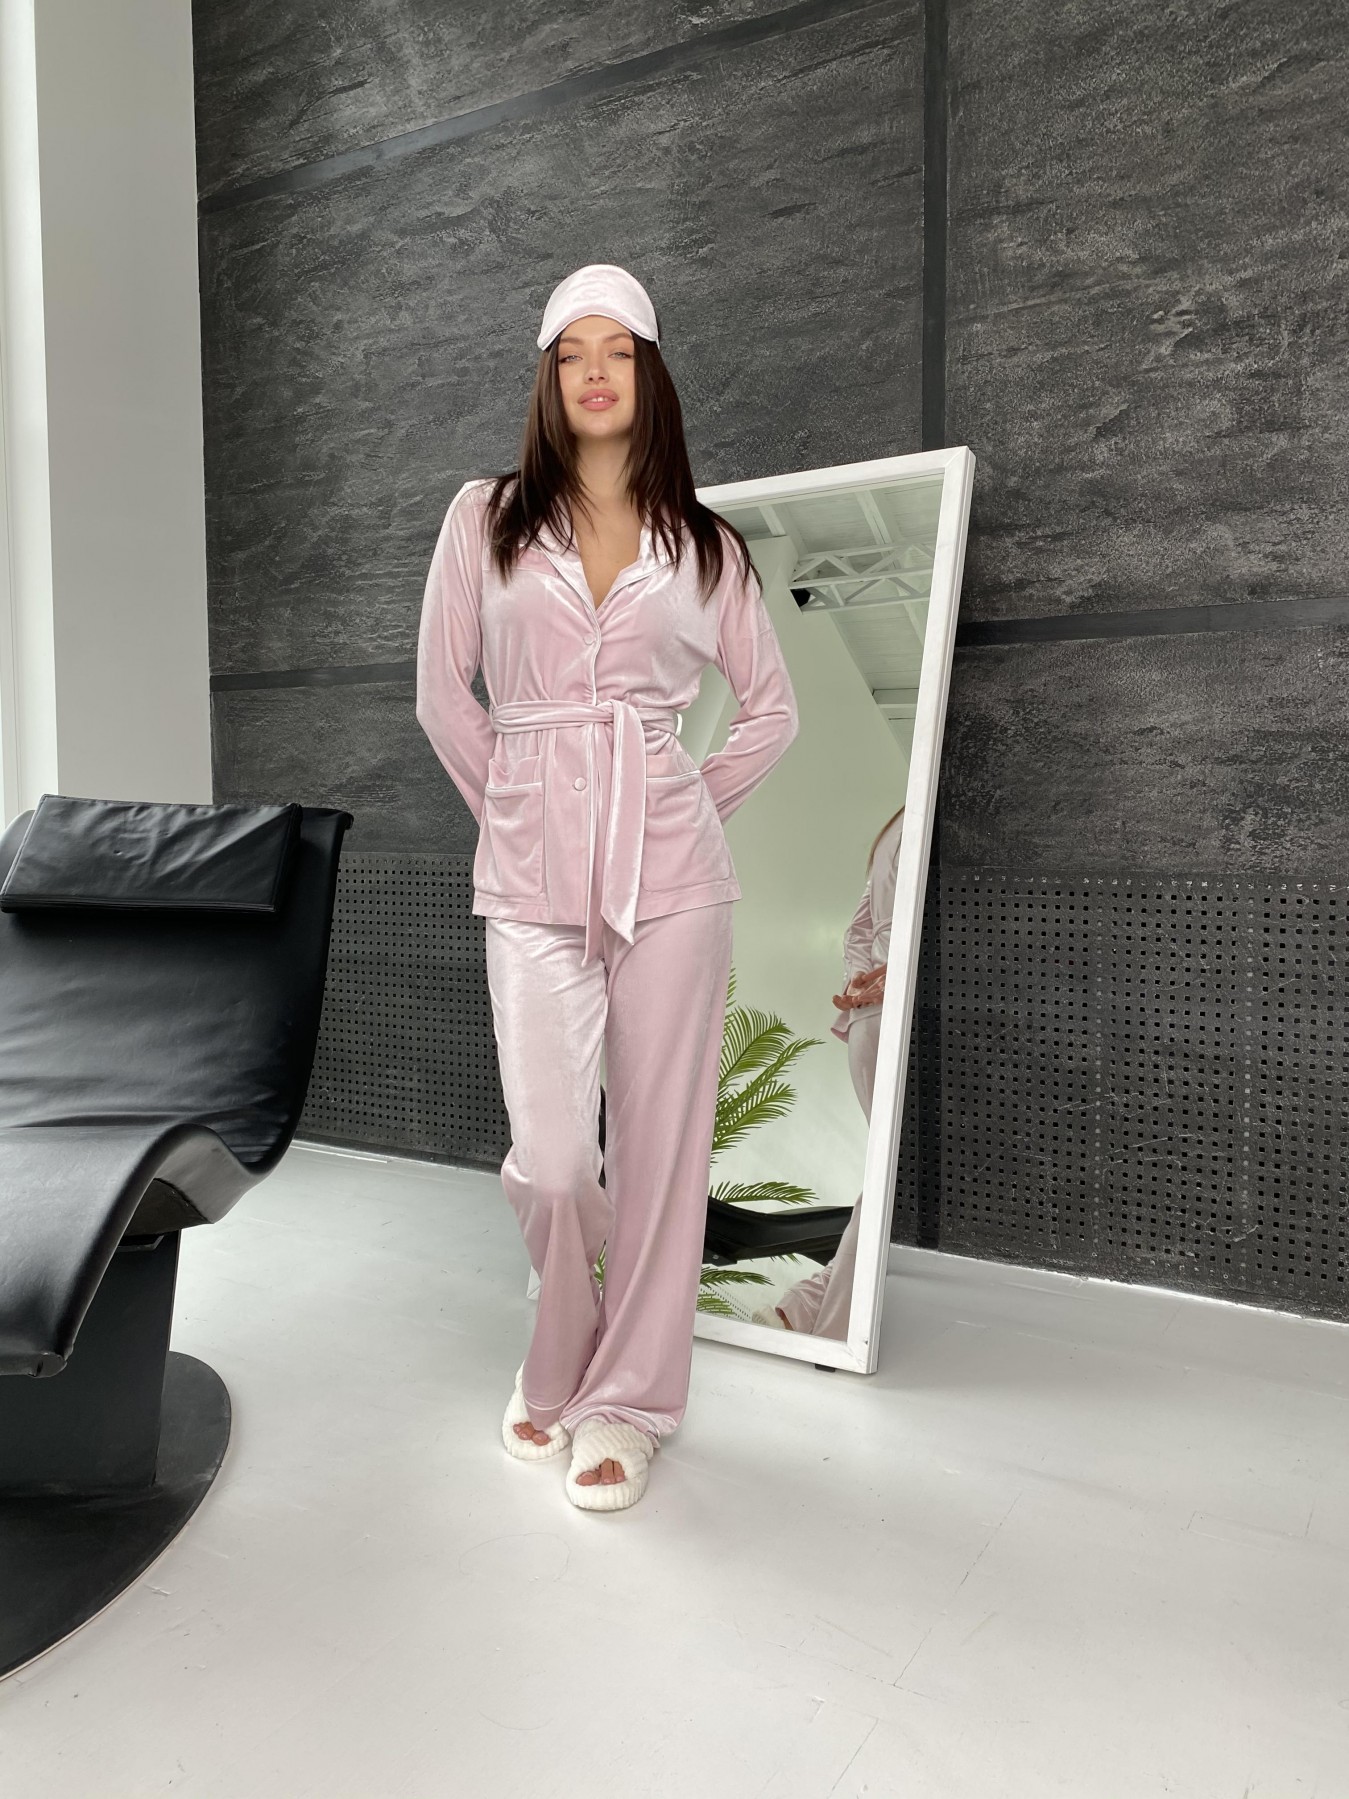 Шайн пижама велюр жакет брюки маска для сна 10353 АРТ. 47088 Цвет: Розовый - фото 4, интернет магазин tm-modus.ru